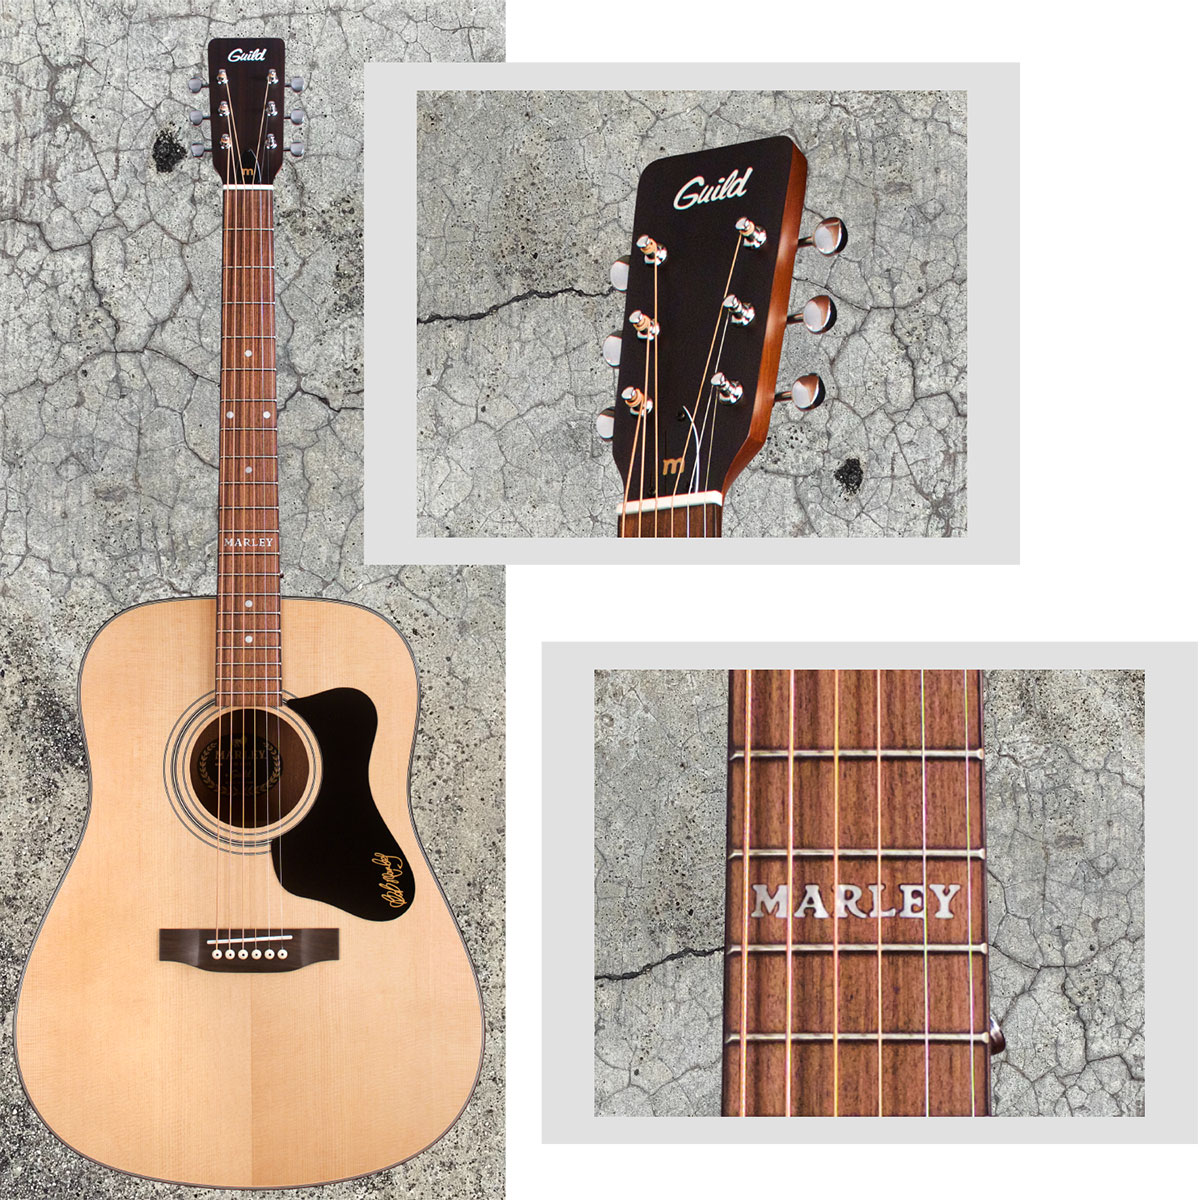 ボブ・マーリーが自宅用として愛用したギターMadeira A-20が復活 島村楽器大分店にGuild (ギルド) のアコースティックギター『A-20 BOB MARLEY』が入荷いたしました！ ギルドがマーリーファミリーとタッグを組んで、ボブ・マーリーが自宅用として愛用したギター「Madeira A […]